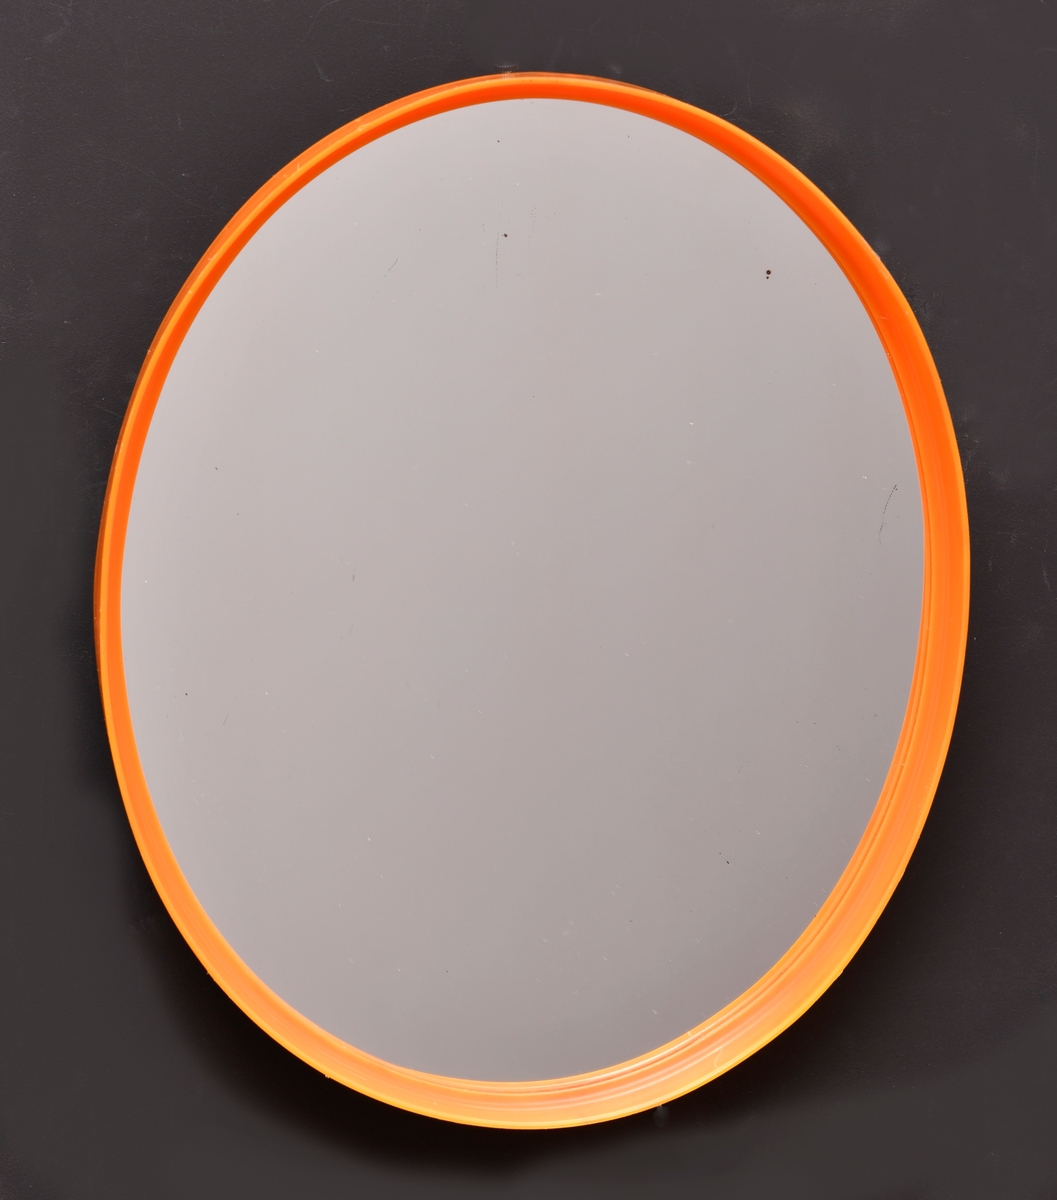 Et ovalt speil. Rammen er av oransje plast. Også opphenget på baksiden av speilet er av oransje plast. Platen bak er av brun plast. Speilet er kjøpt på en DOMUS-butikk for kroner 16,50.-.